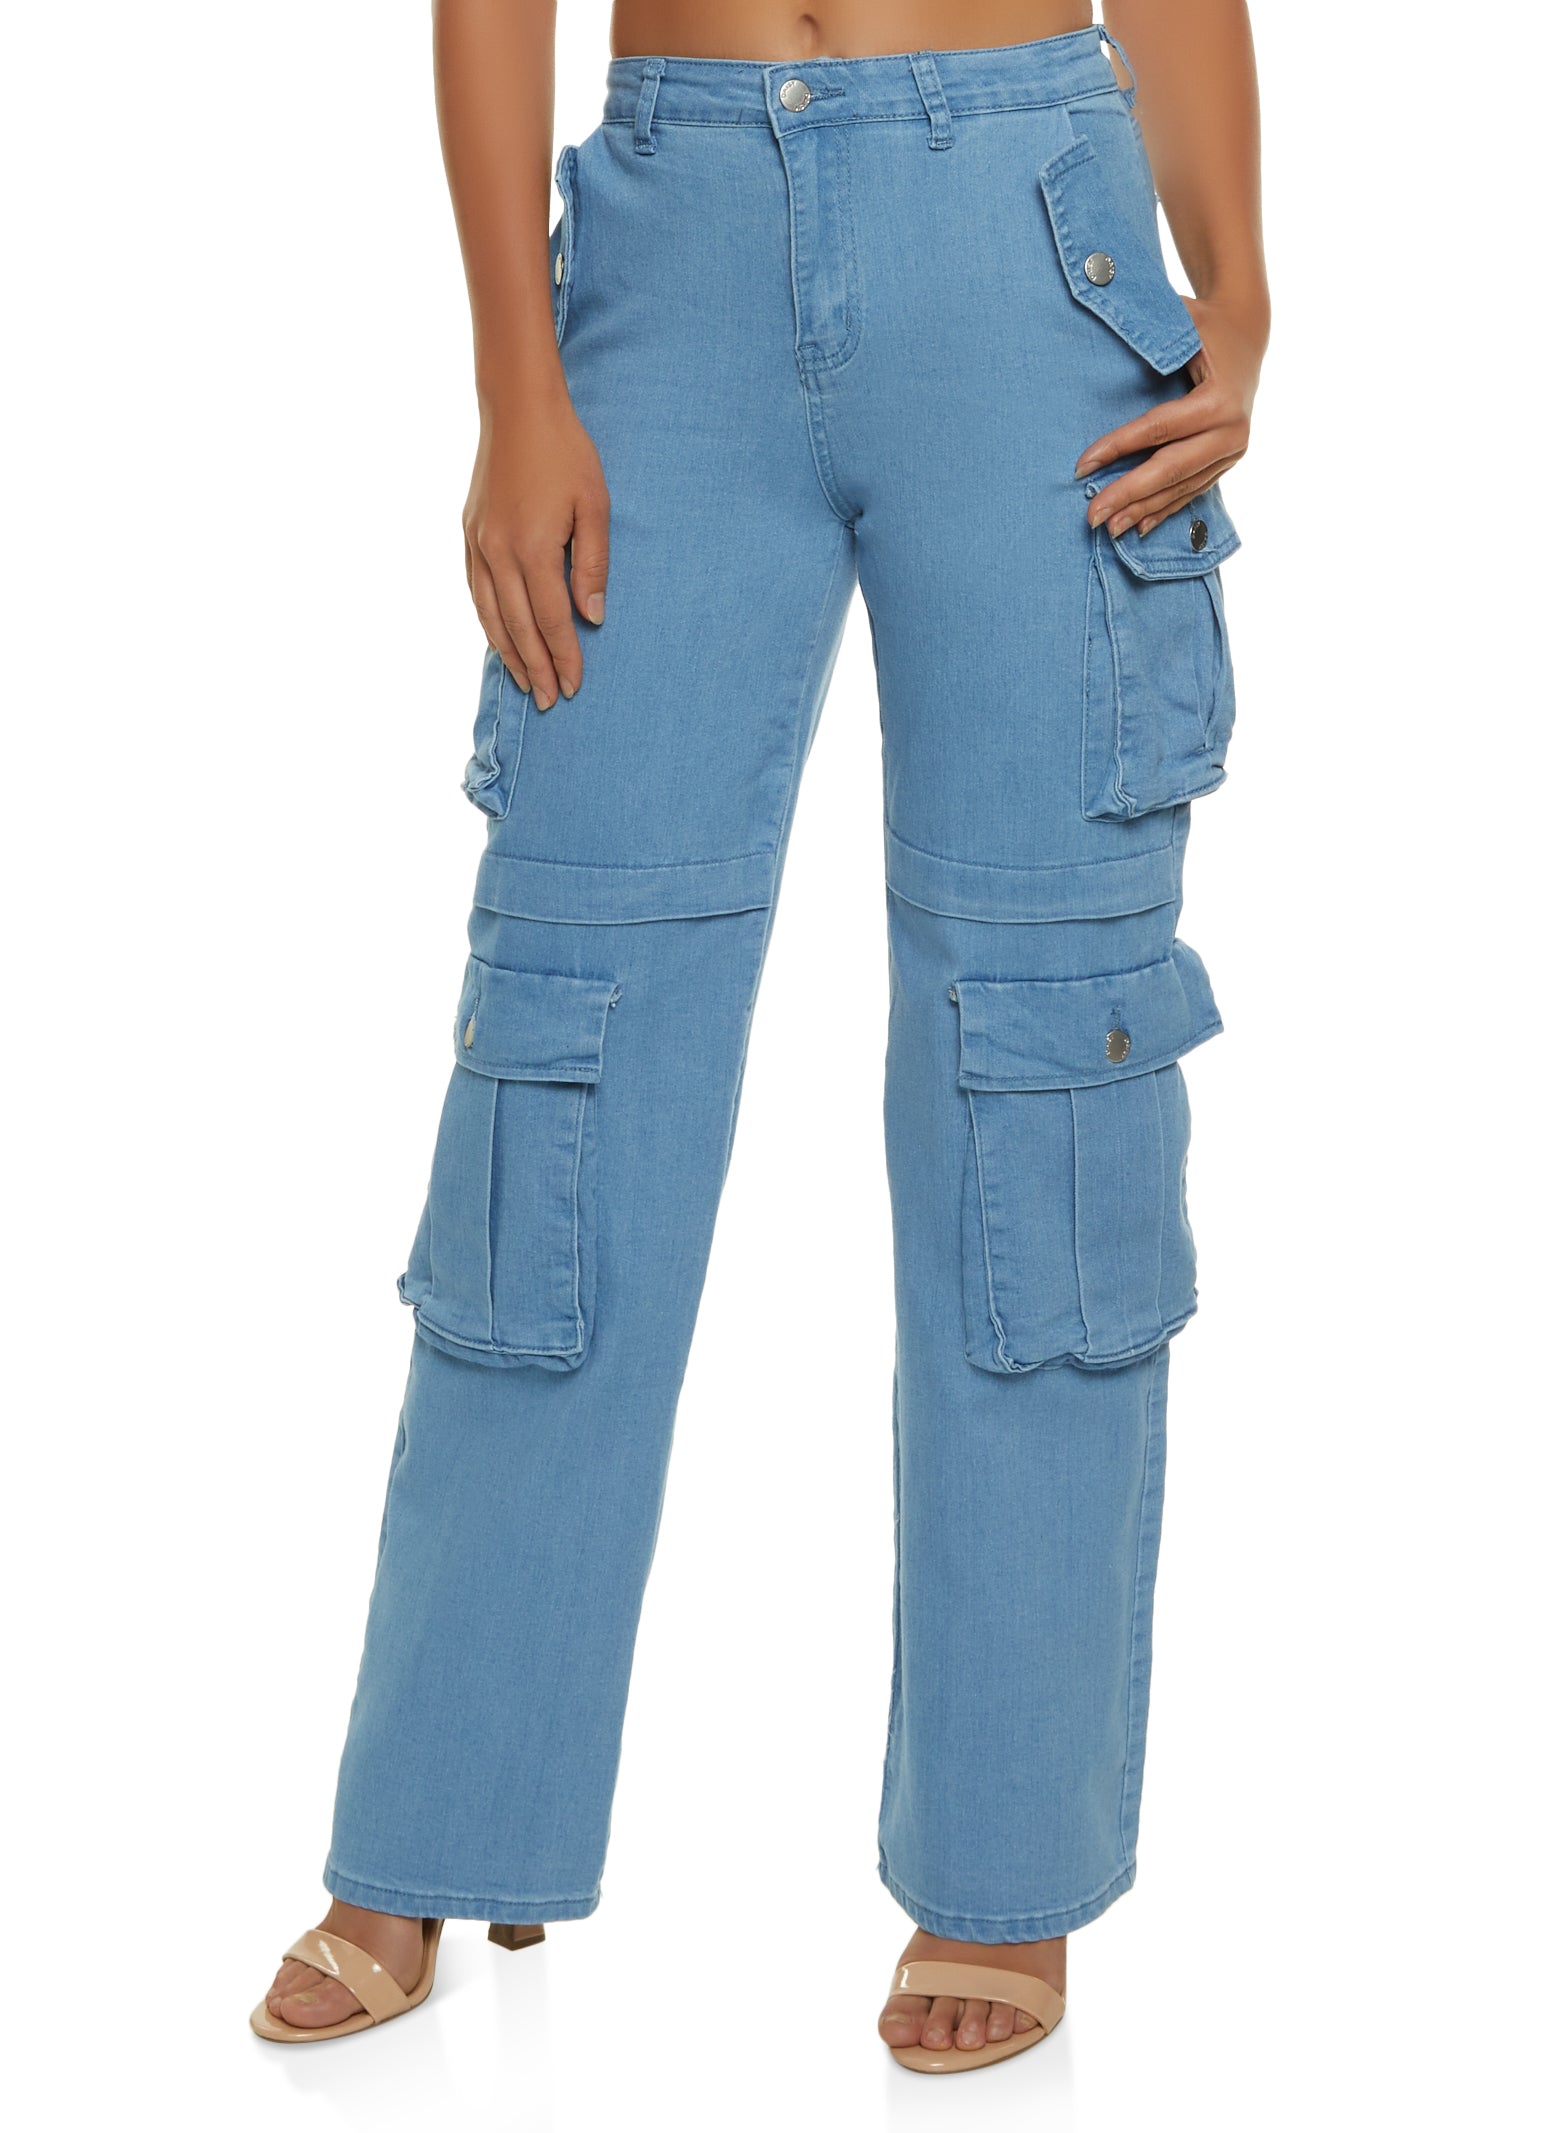 Womens Wide Leg Cargo Jeans, Blue, Size S